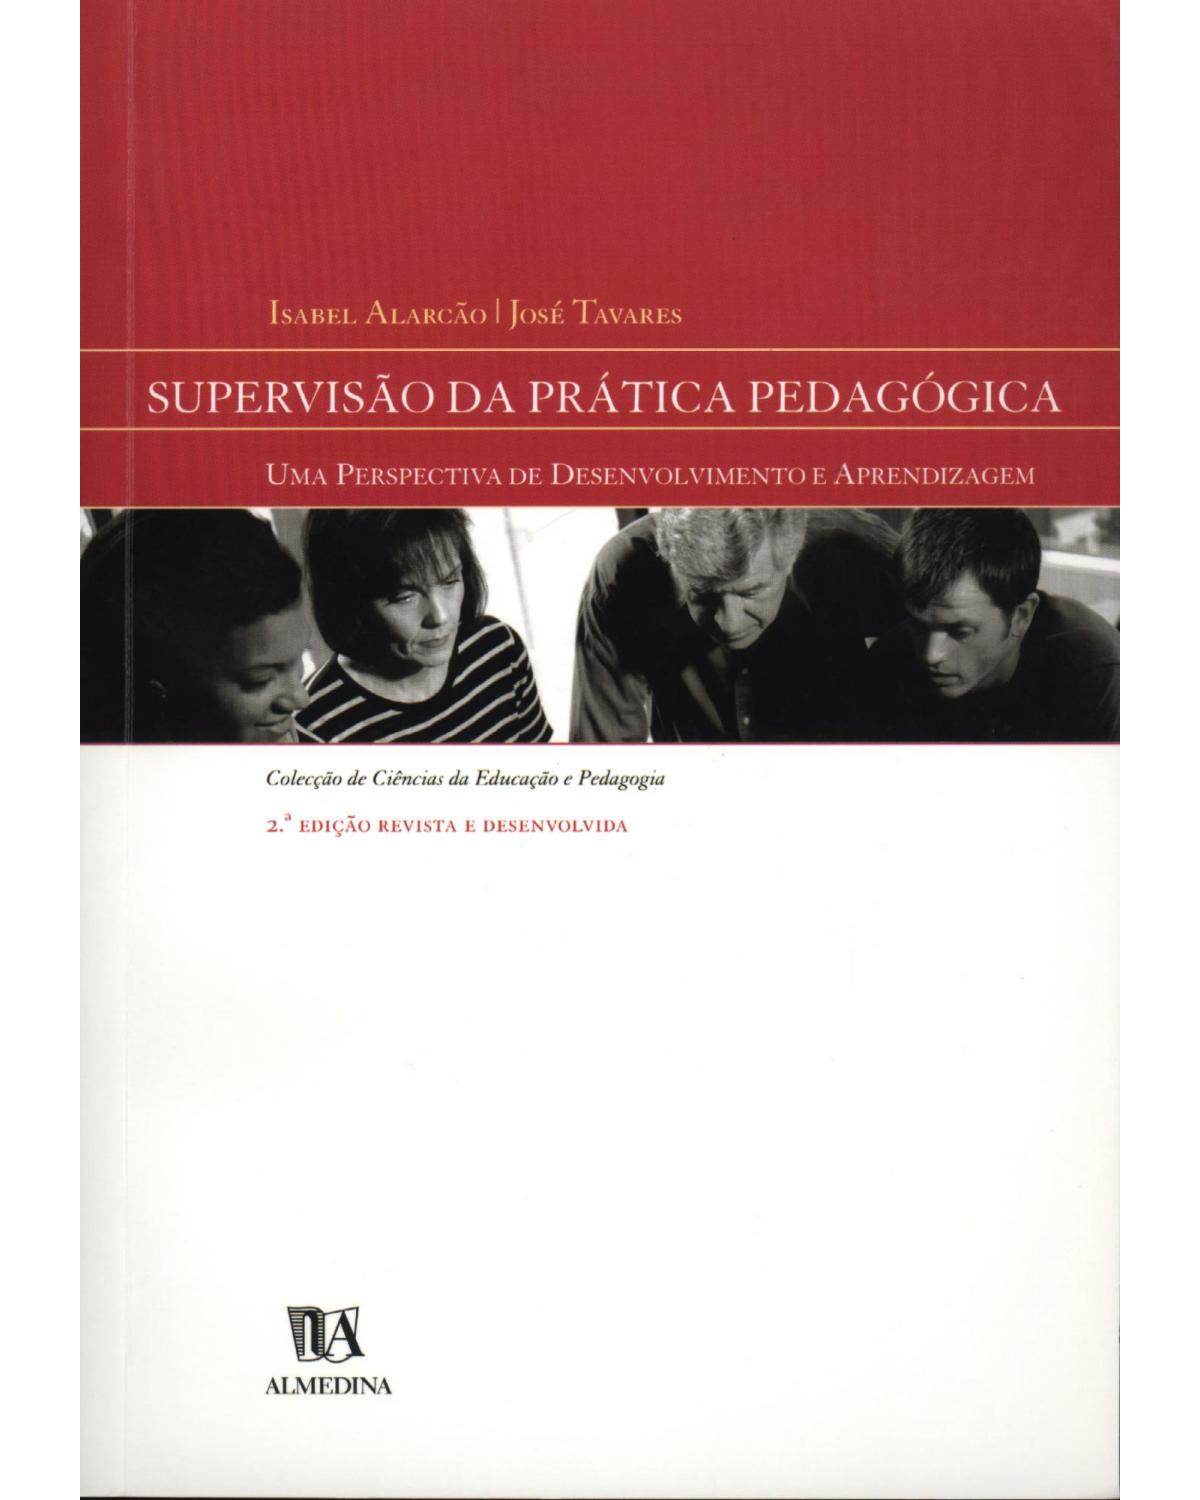 Supervisão da prática pedagógica - uma perspectiva de desenvolvimento e aprendizagem - 2ª Edição | 2007